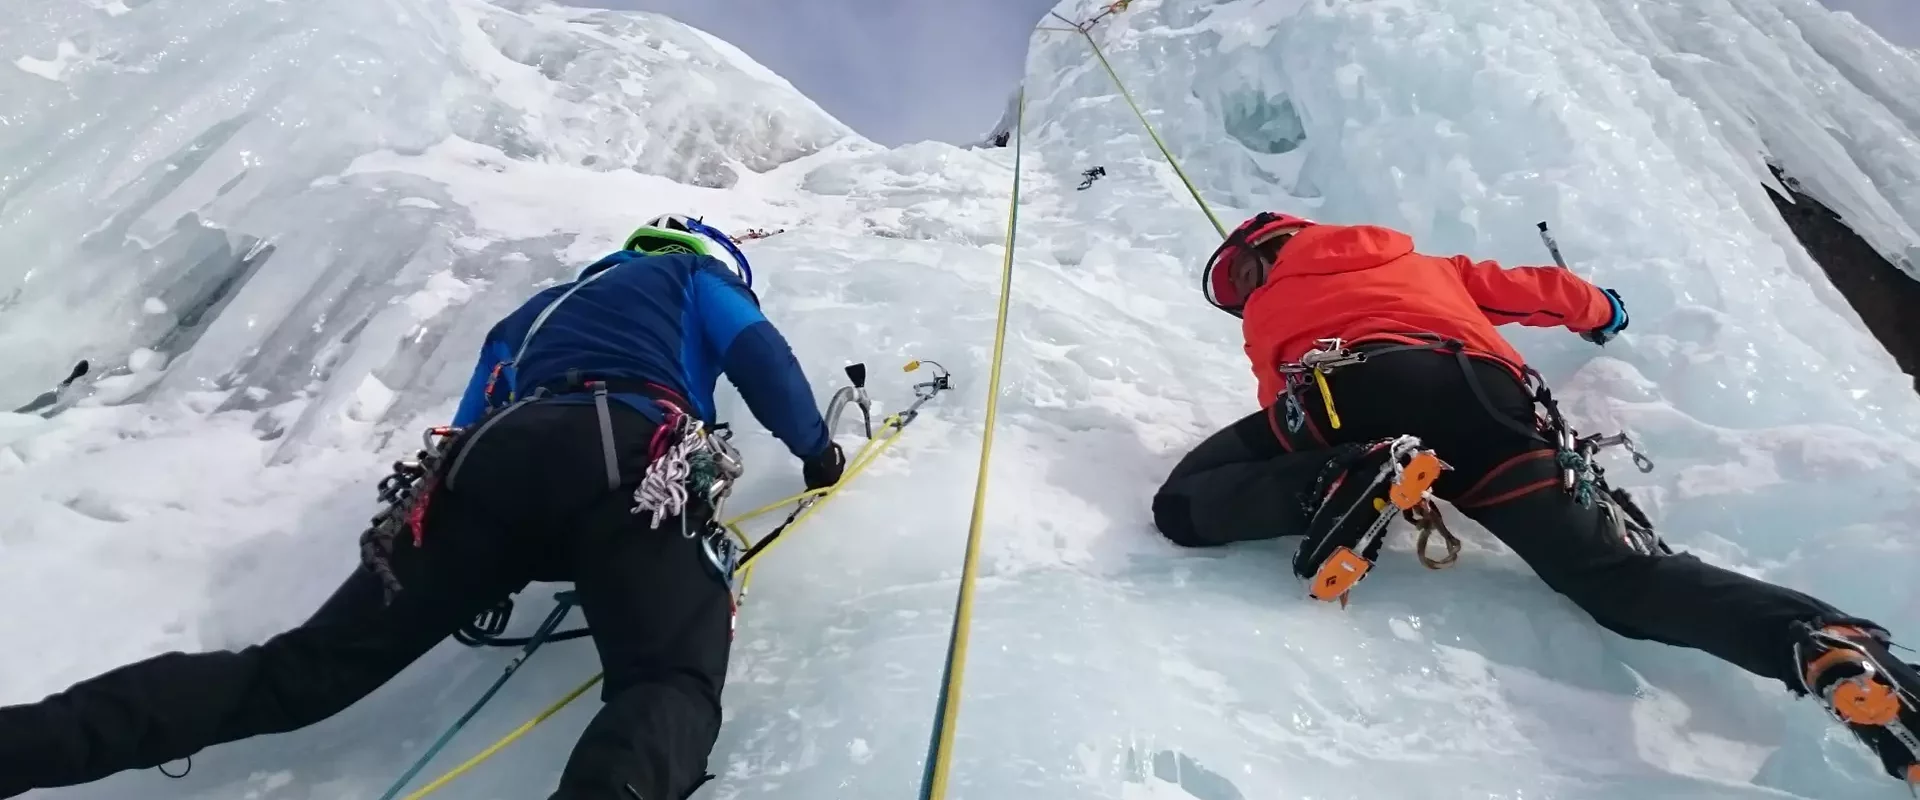 Cascade de glace avec les grimpeurs des alpes